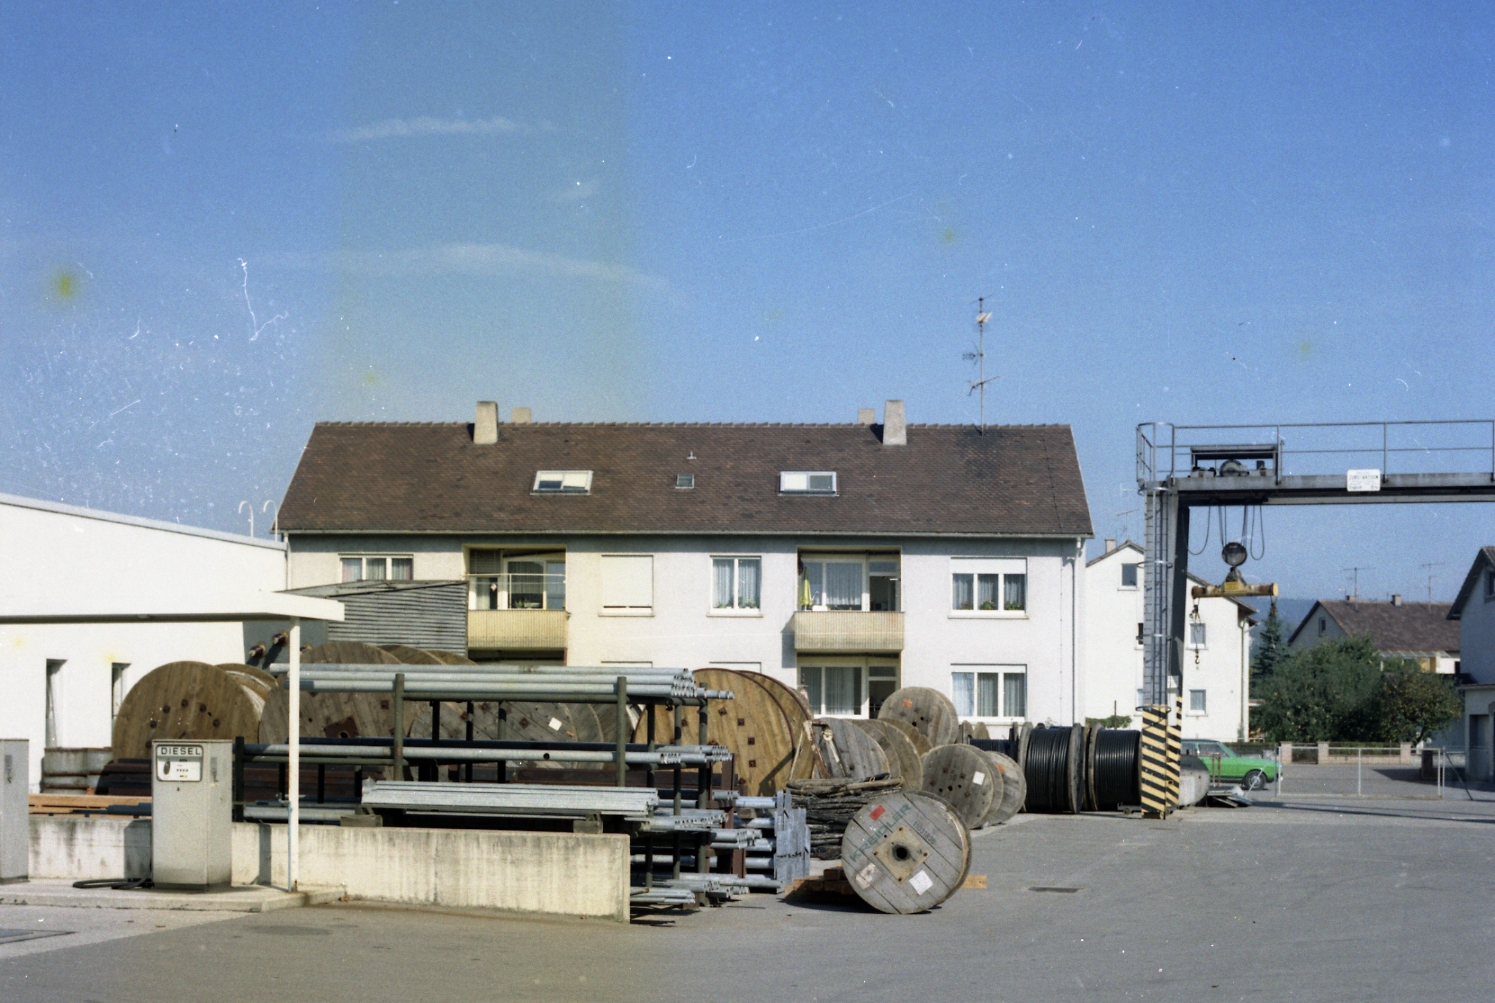  Materiallager des Badenwerks, Bild: Archiv der EnBW AG, Wirtschaftsarchiv Baden-Württemberg, Stuttgart, B88 F0667 